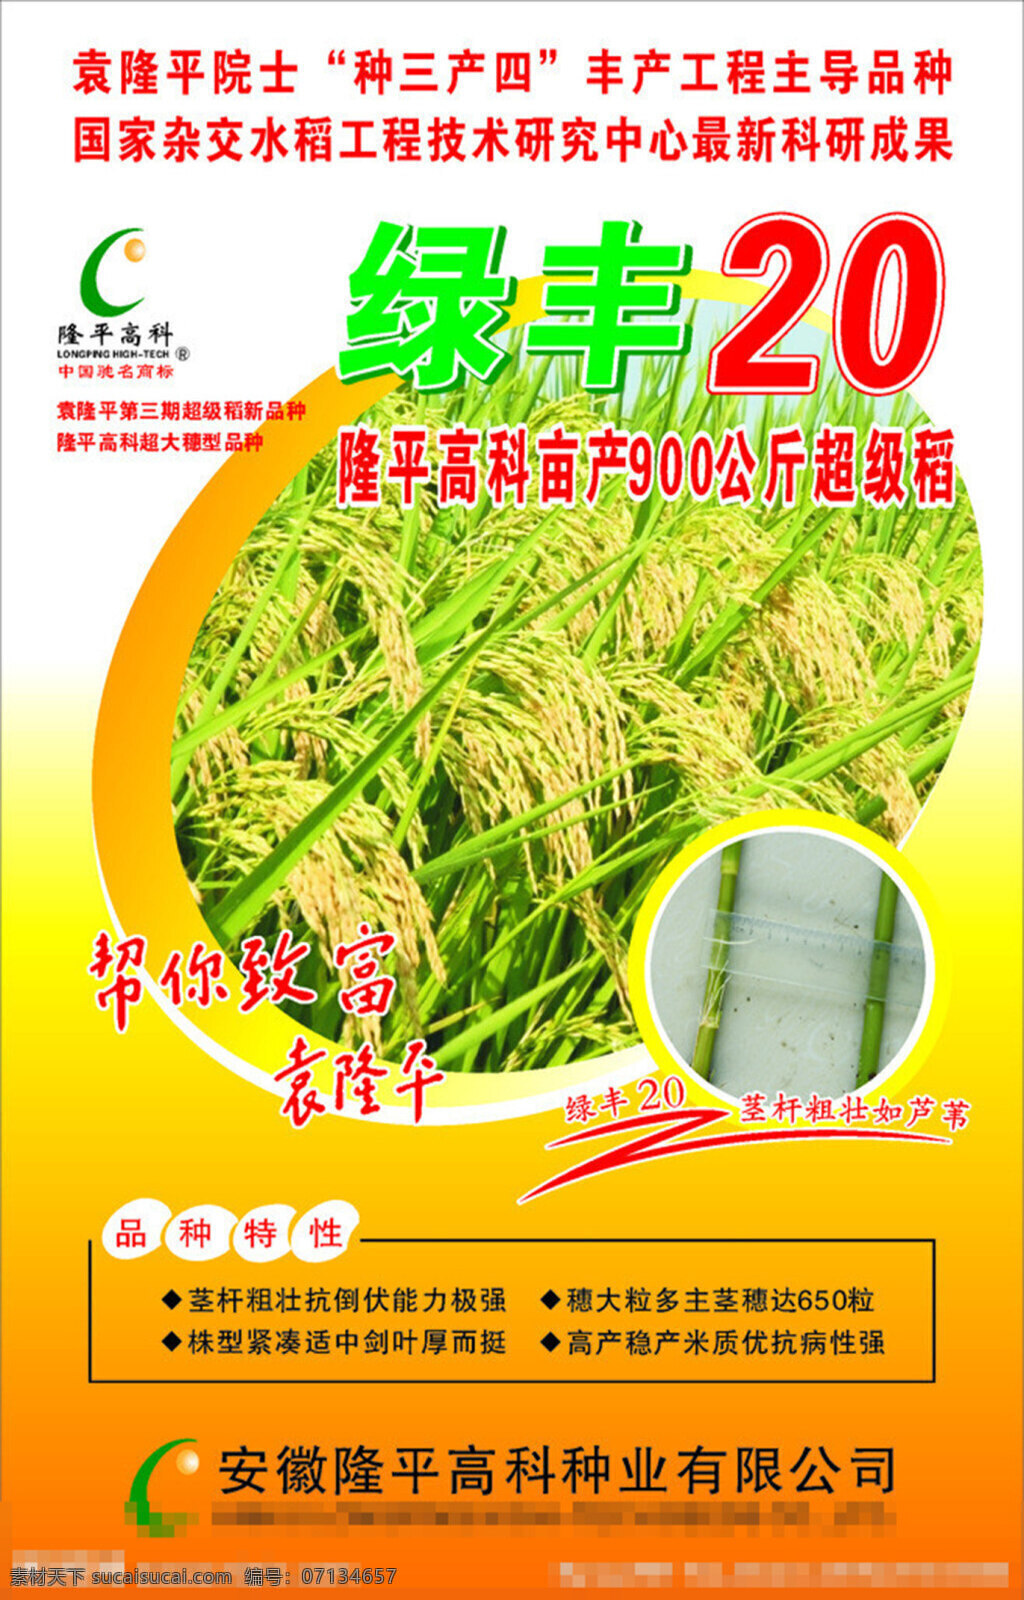 水稻种子 包装设计 绿丰20 水稻 水稻种子包装 两 优 号 包装 稻粒 底纹 商标 隆平高科 袁隆平 矢量 黄色